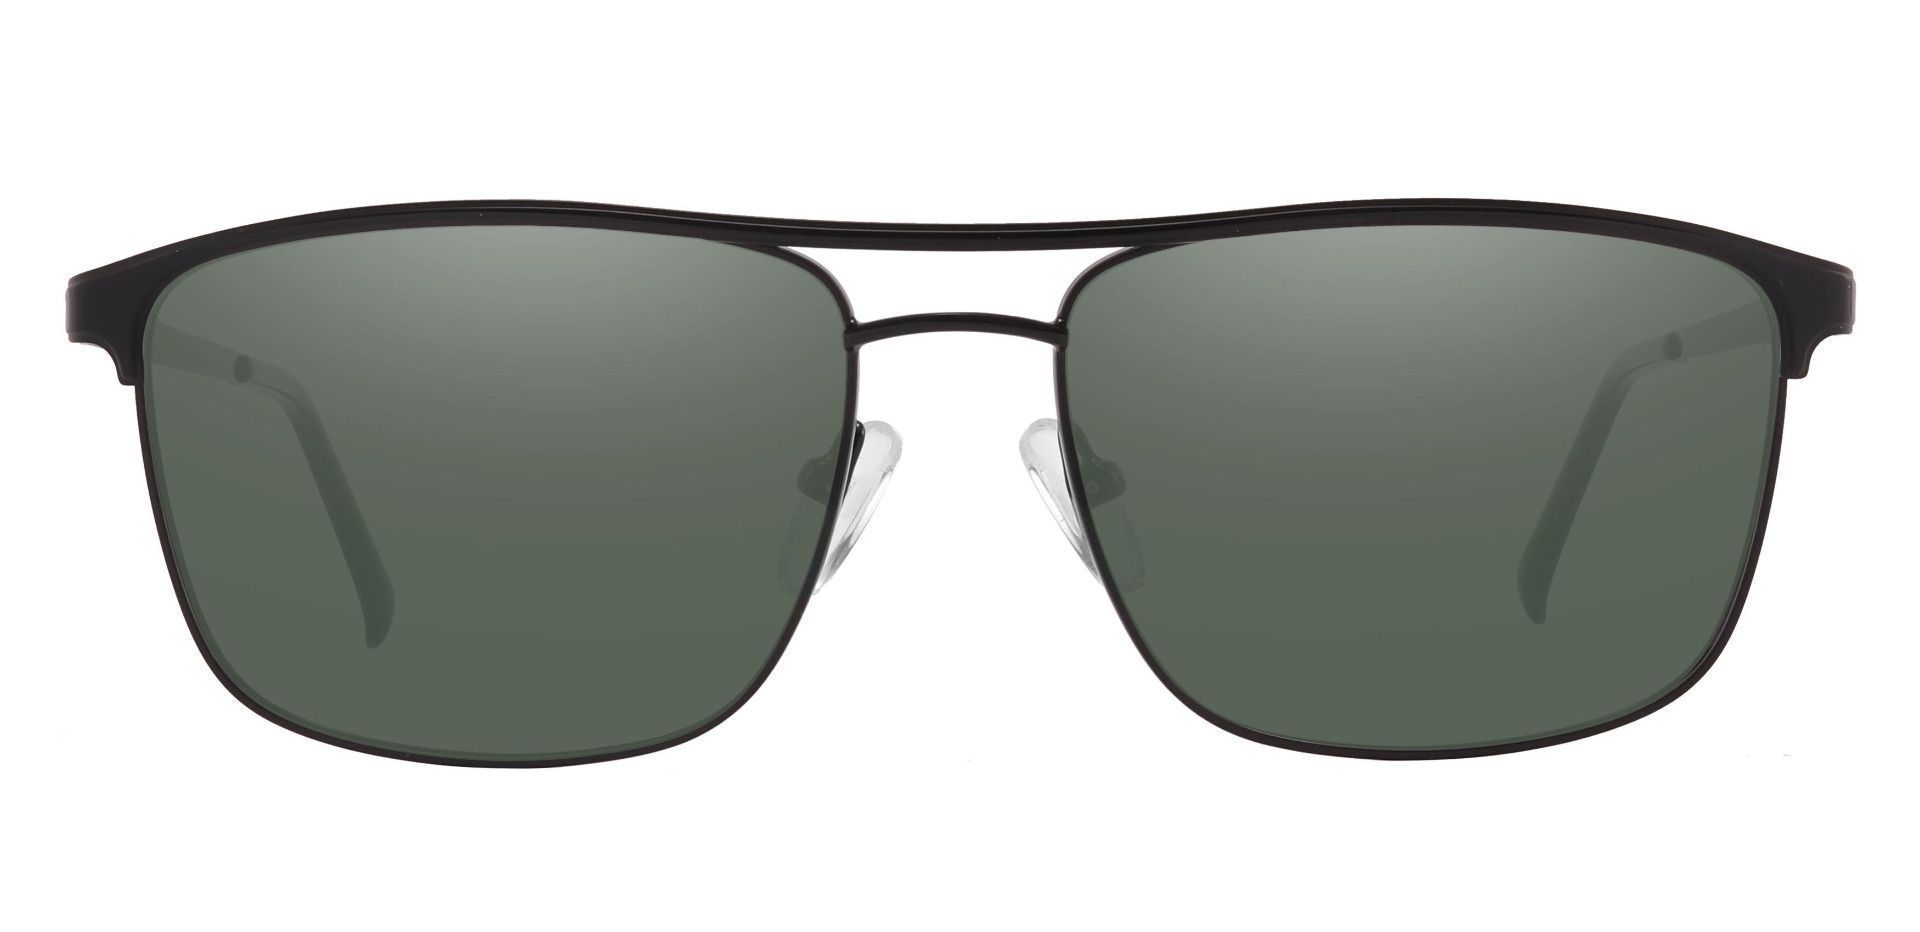 Darren Aviator Prescription Sunglasses - Black Frame With Green Lenses